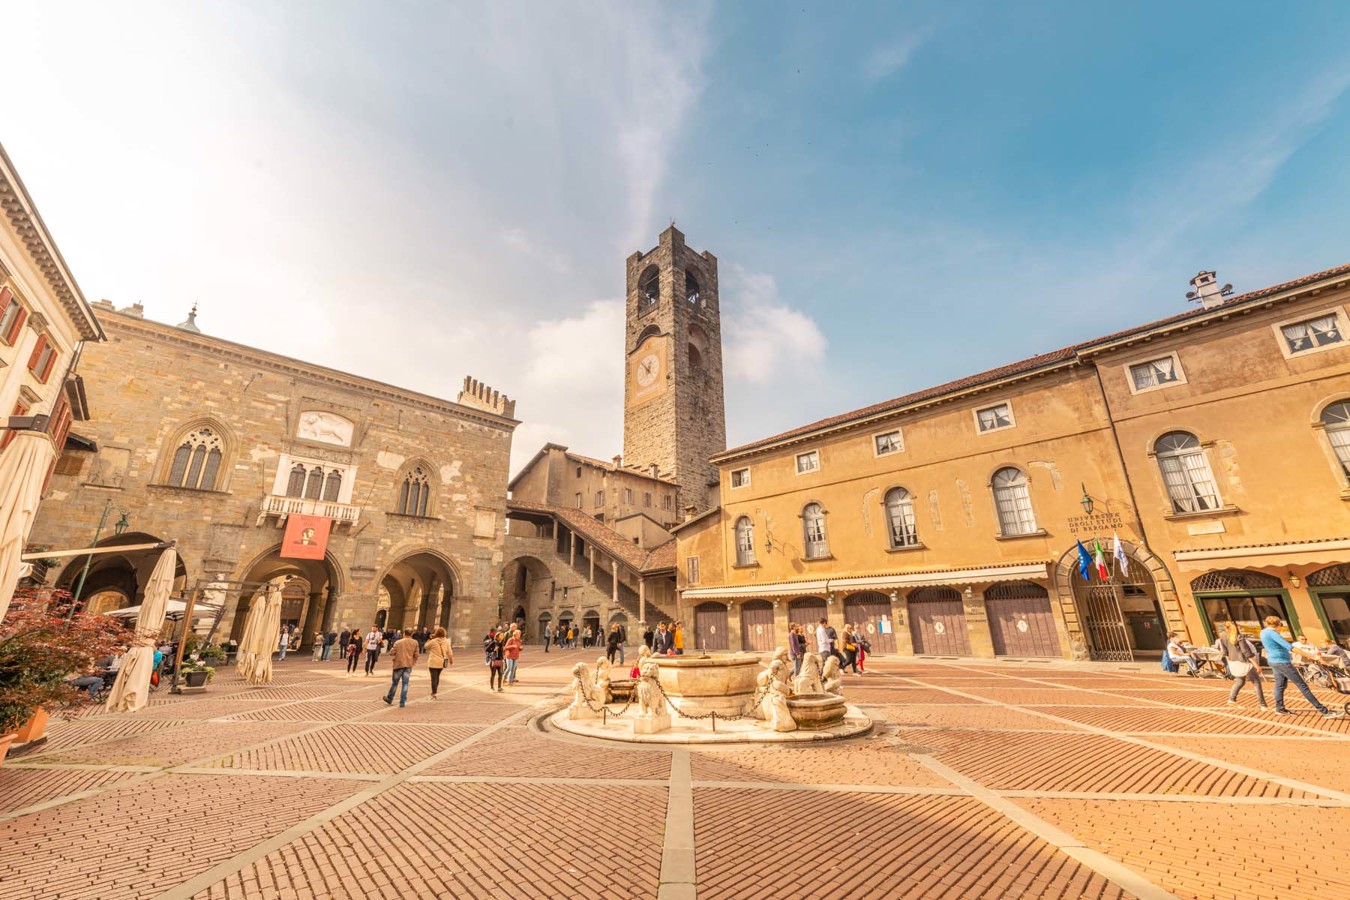 Piazza Vecchia in Bergamo old town